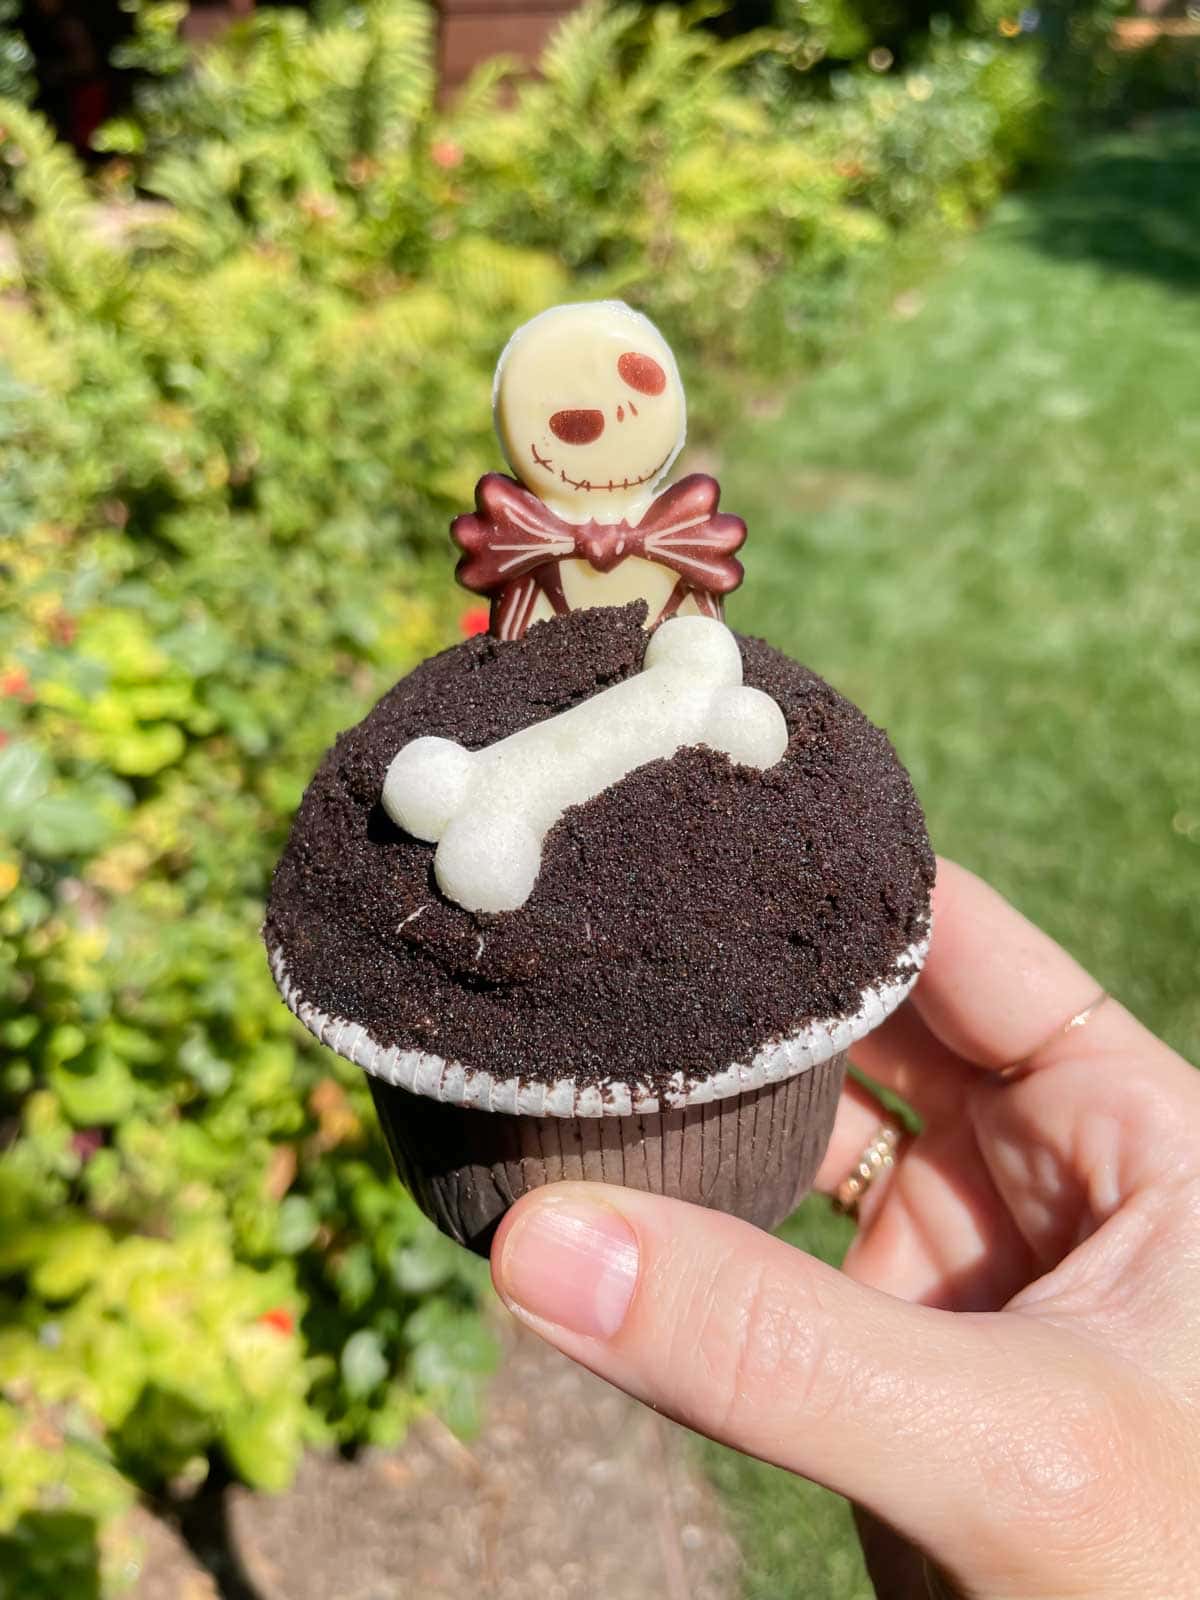 Jack Skellington Cupcake - some of the best Disneyland Halloween food.